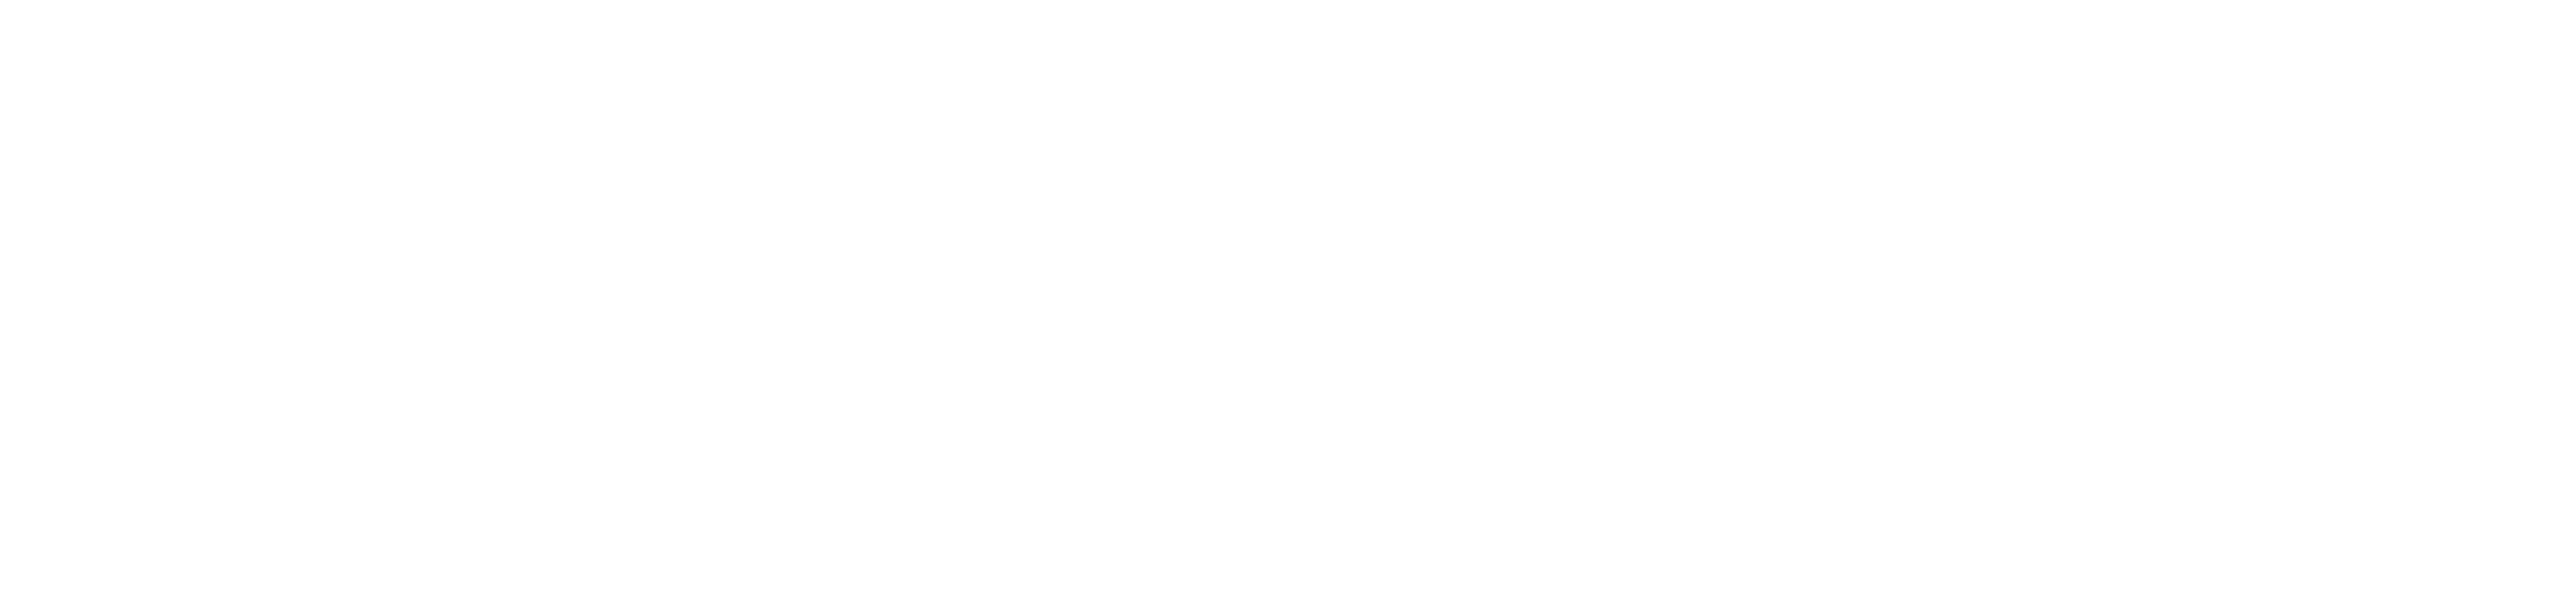 百居佳丽地板-浙江百利达木业有限公司